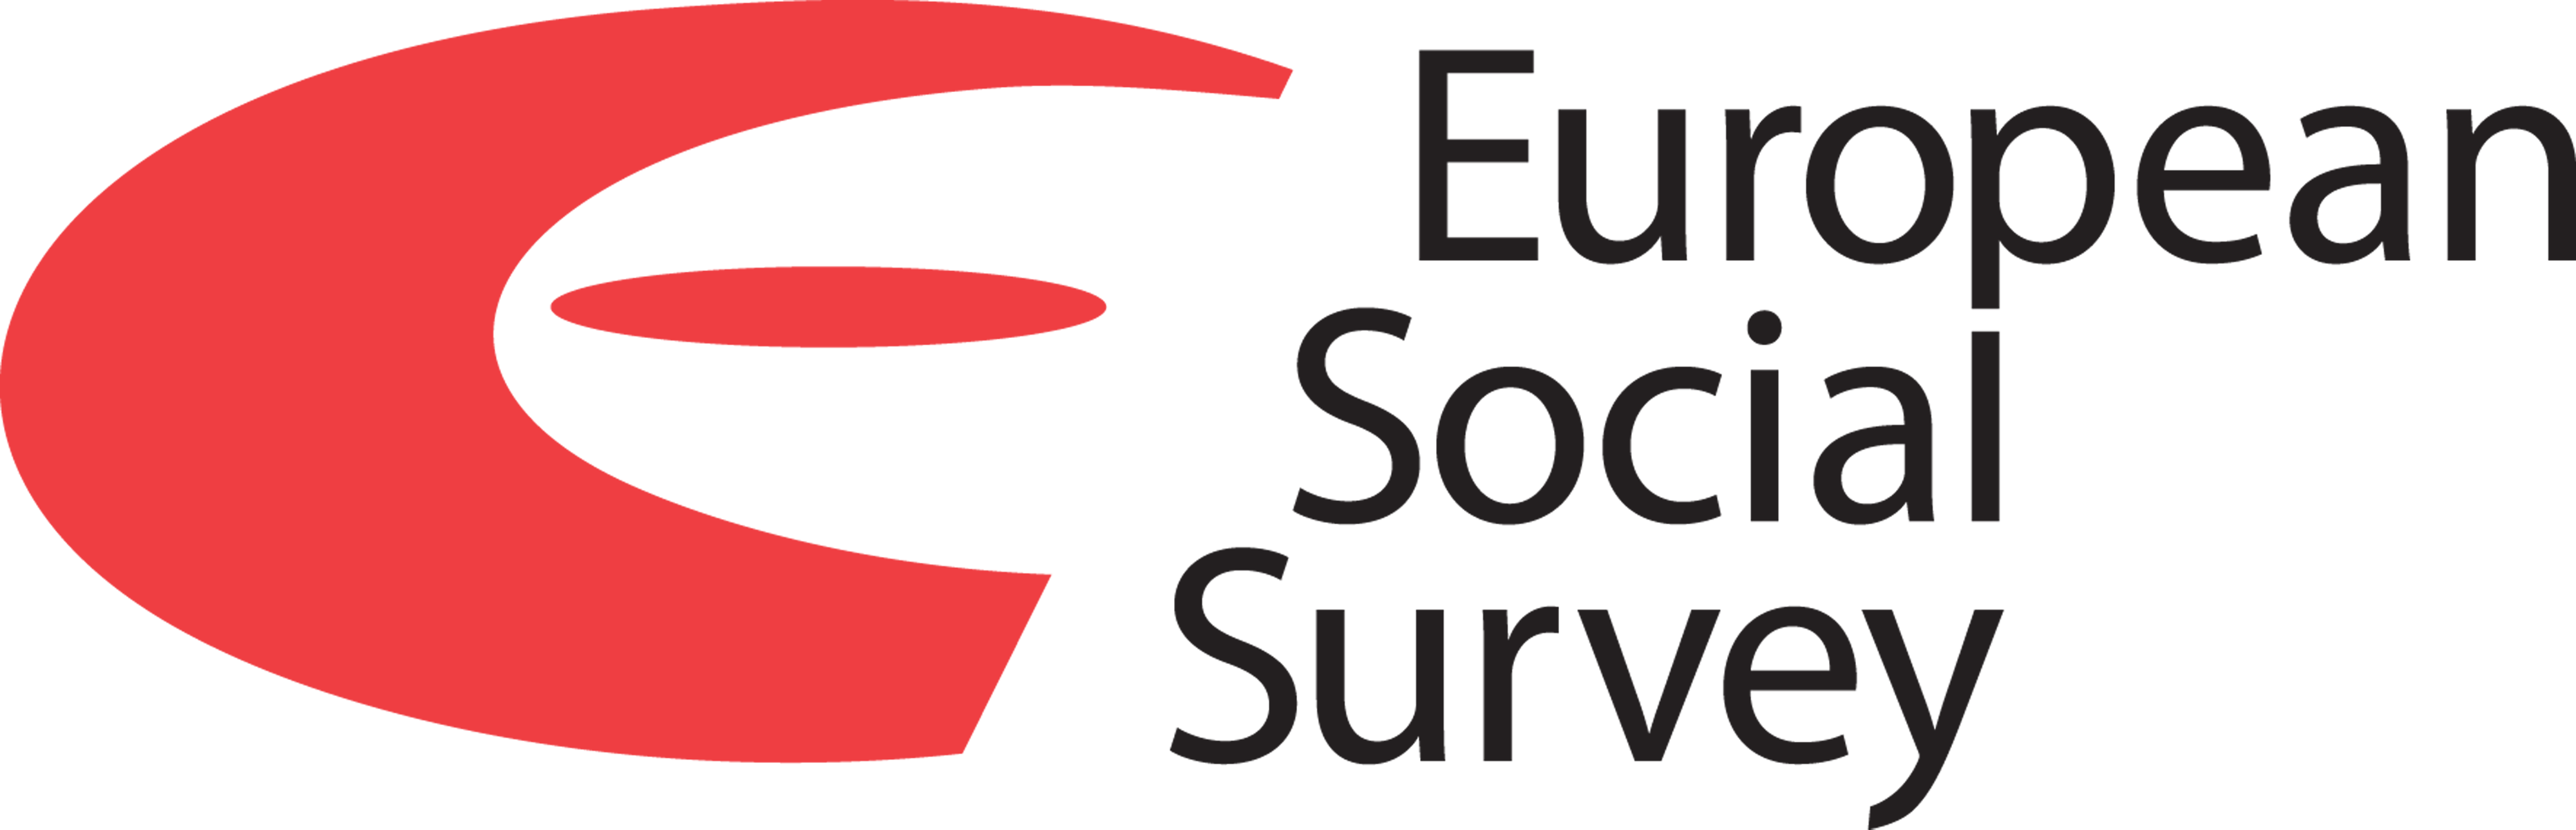 11ος γύρος της Ευρωπαϊκής Κοινωνικής Έρευνας στην Ελλάδα